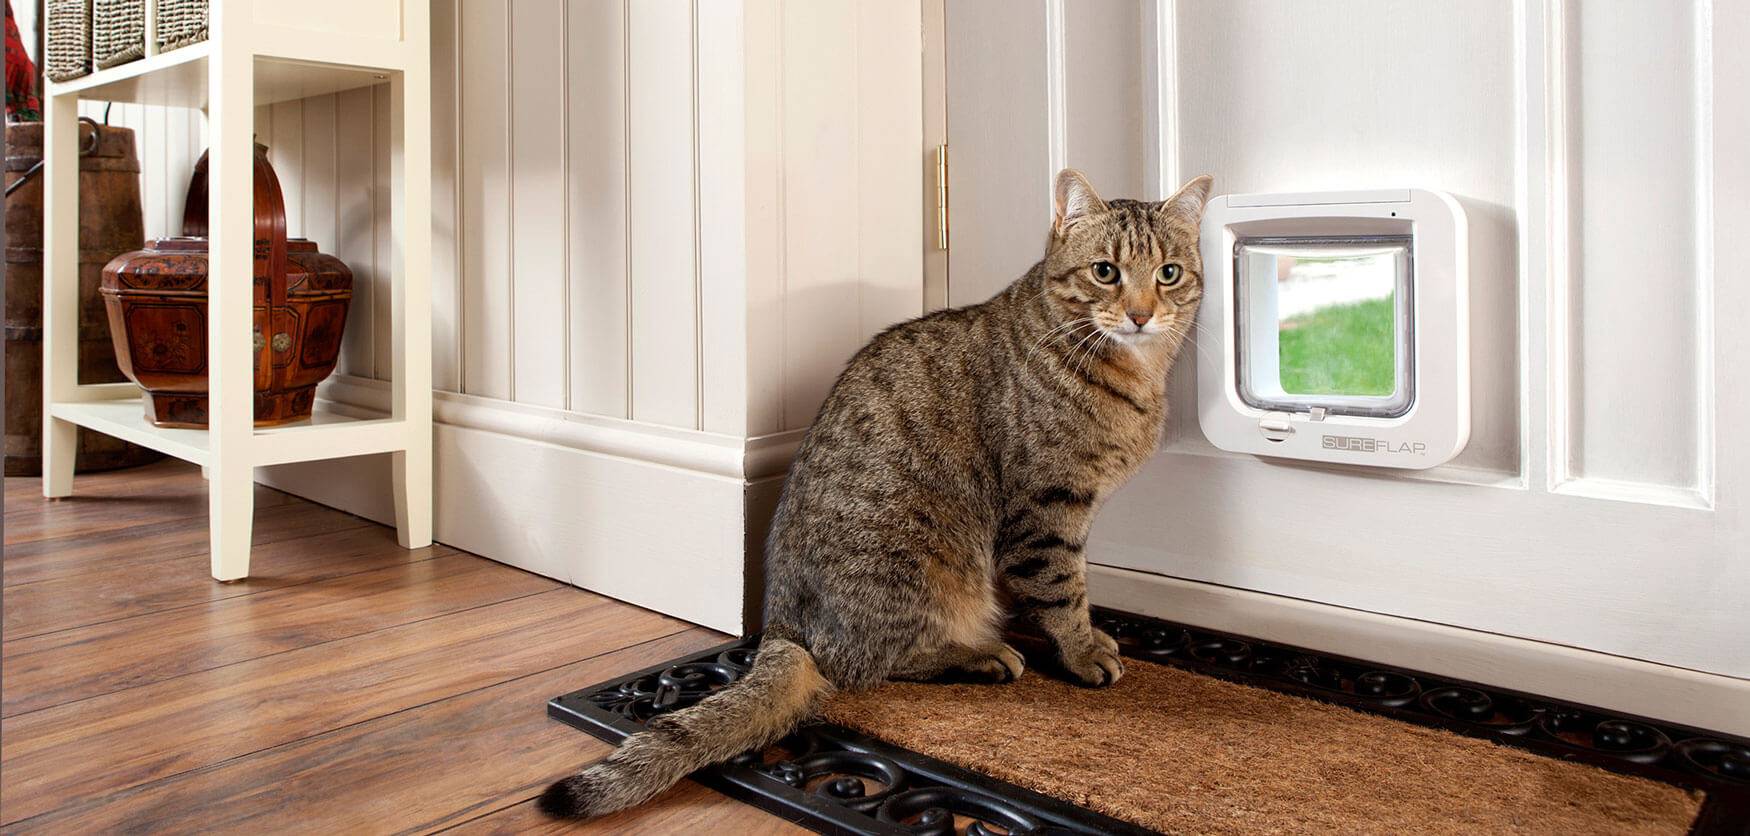 Кошка – лучшая защита вашего дома от нечисти и дурного глаза, выберите свою